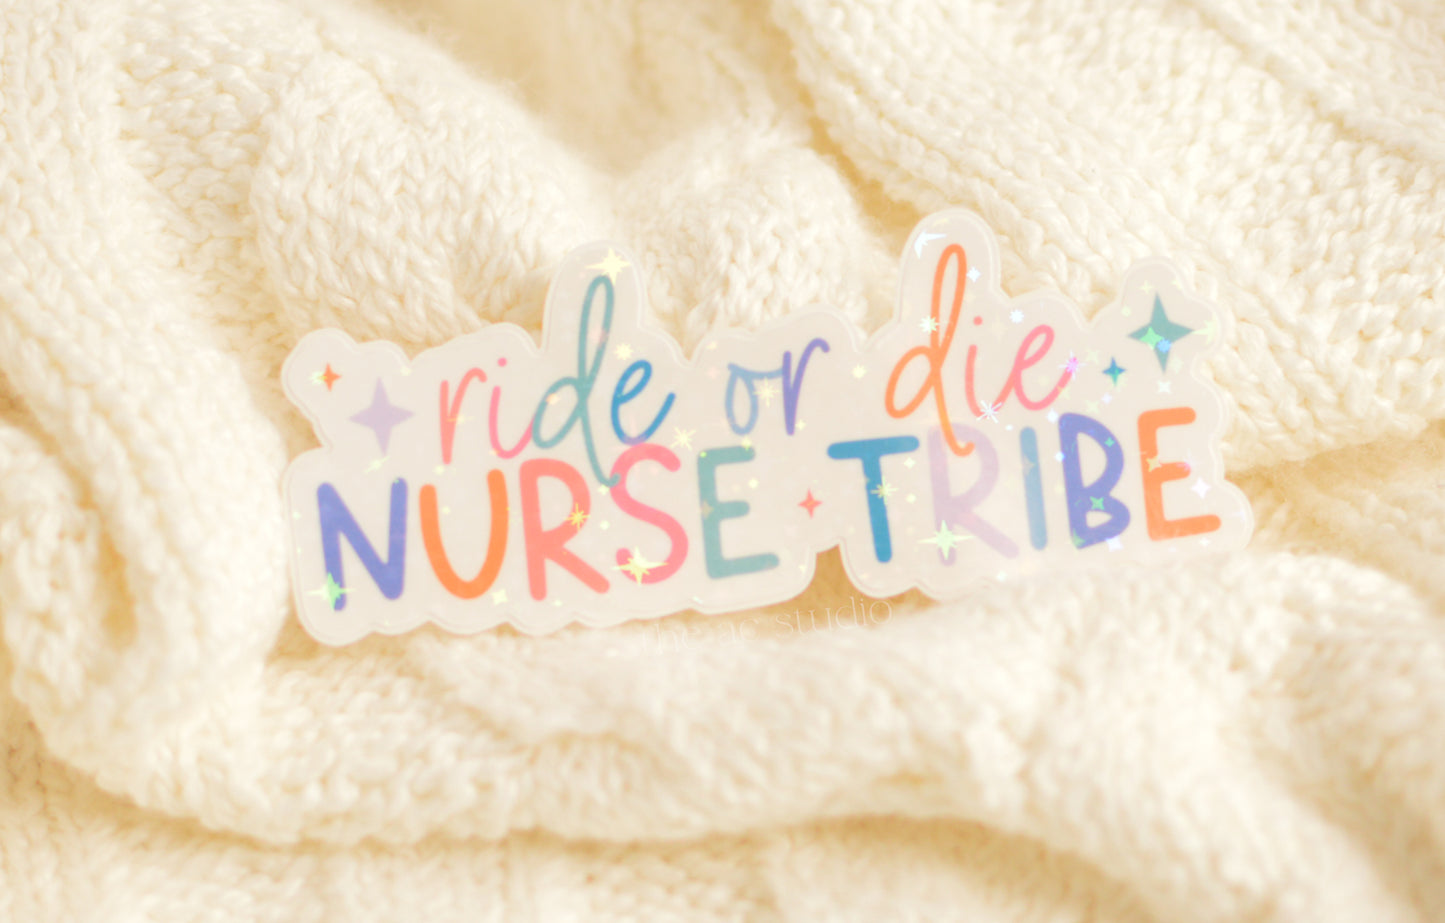 Nurse Tribe, Ride or Die Sticker